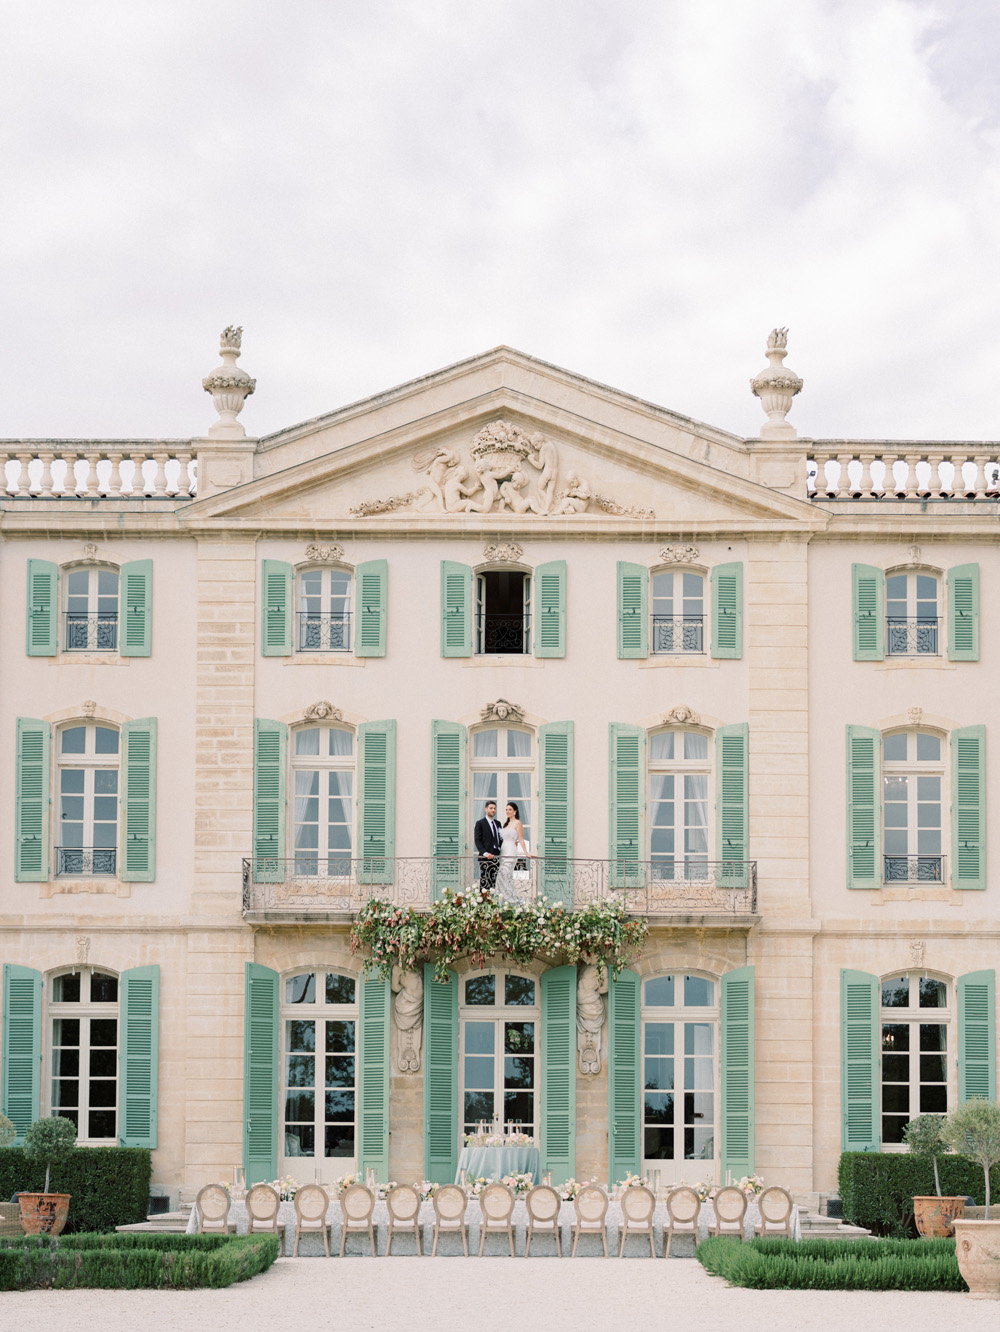 Chateau De Tourreau wedding